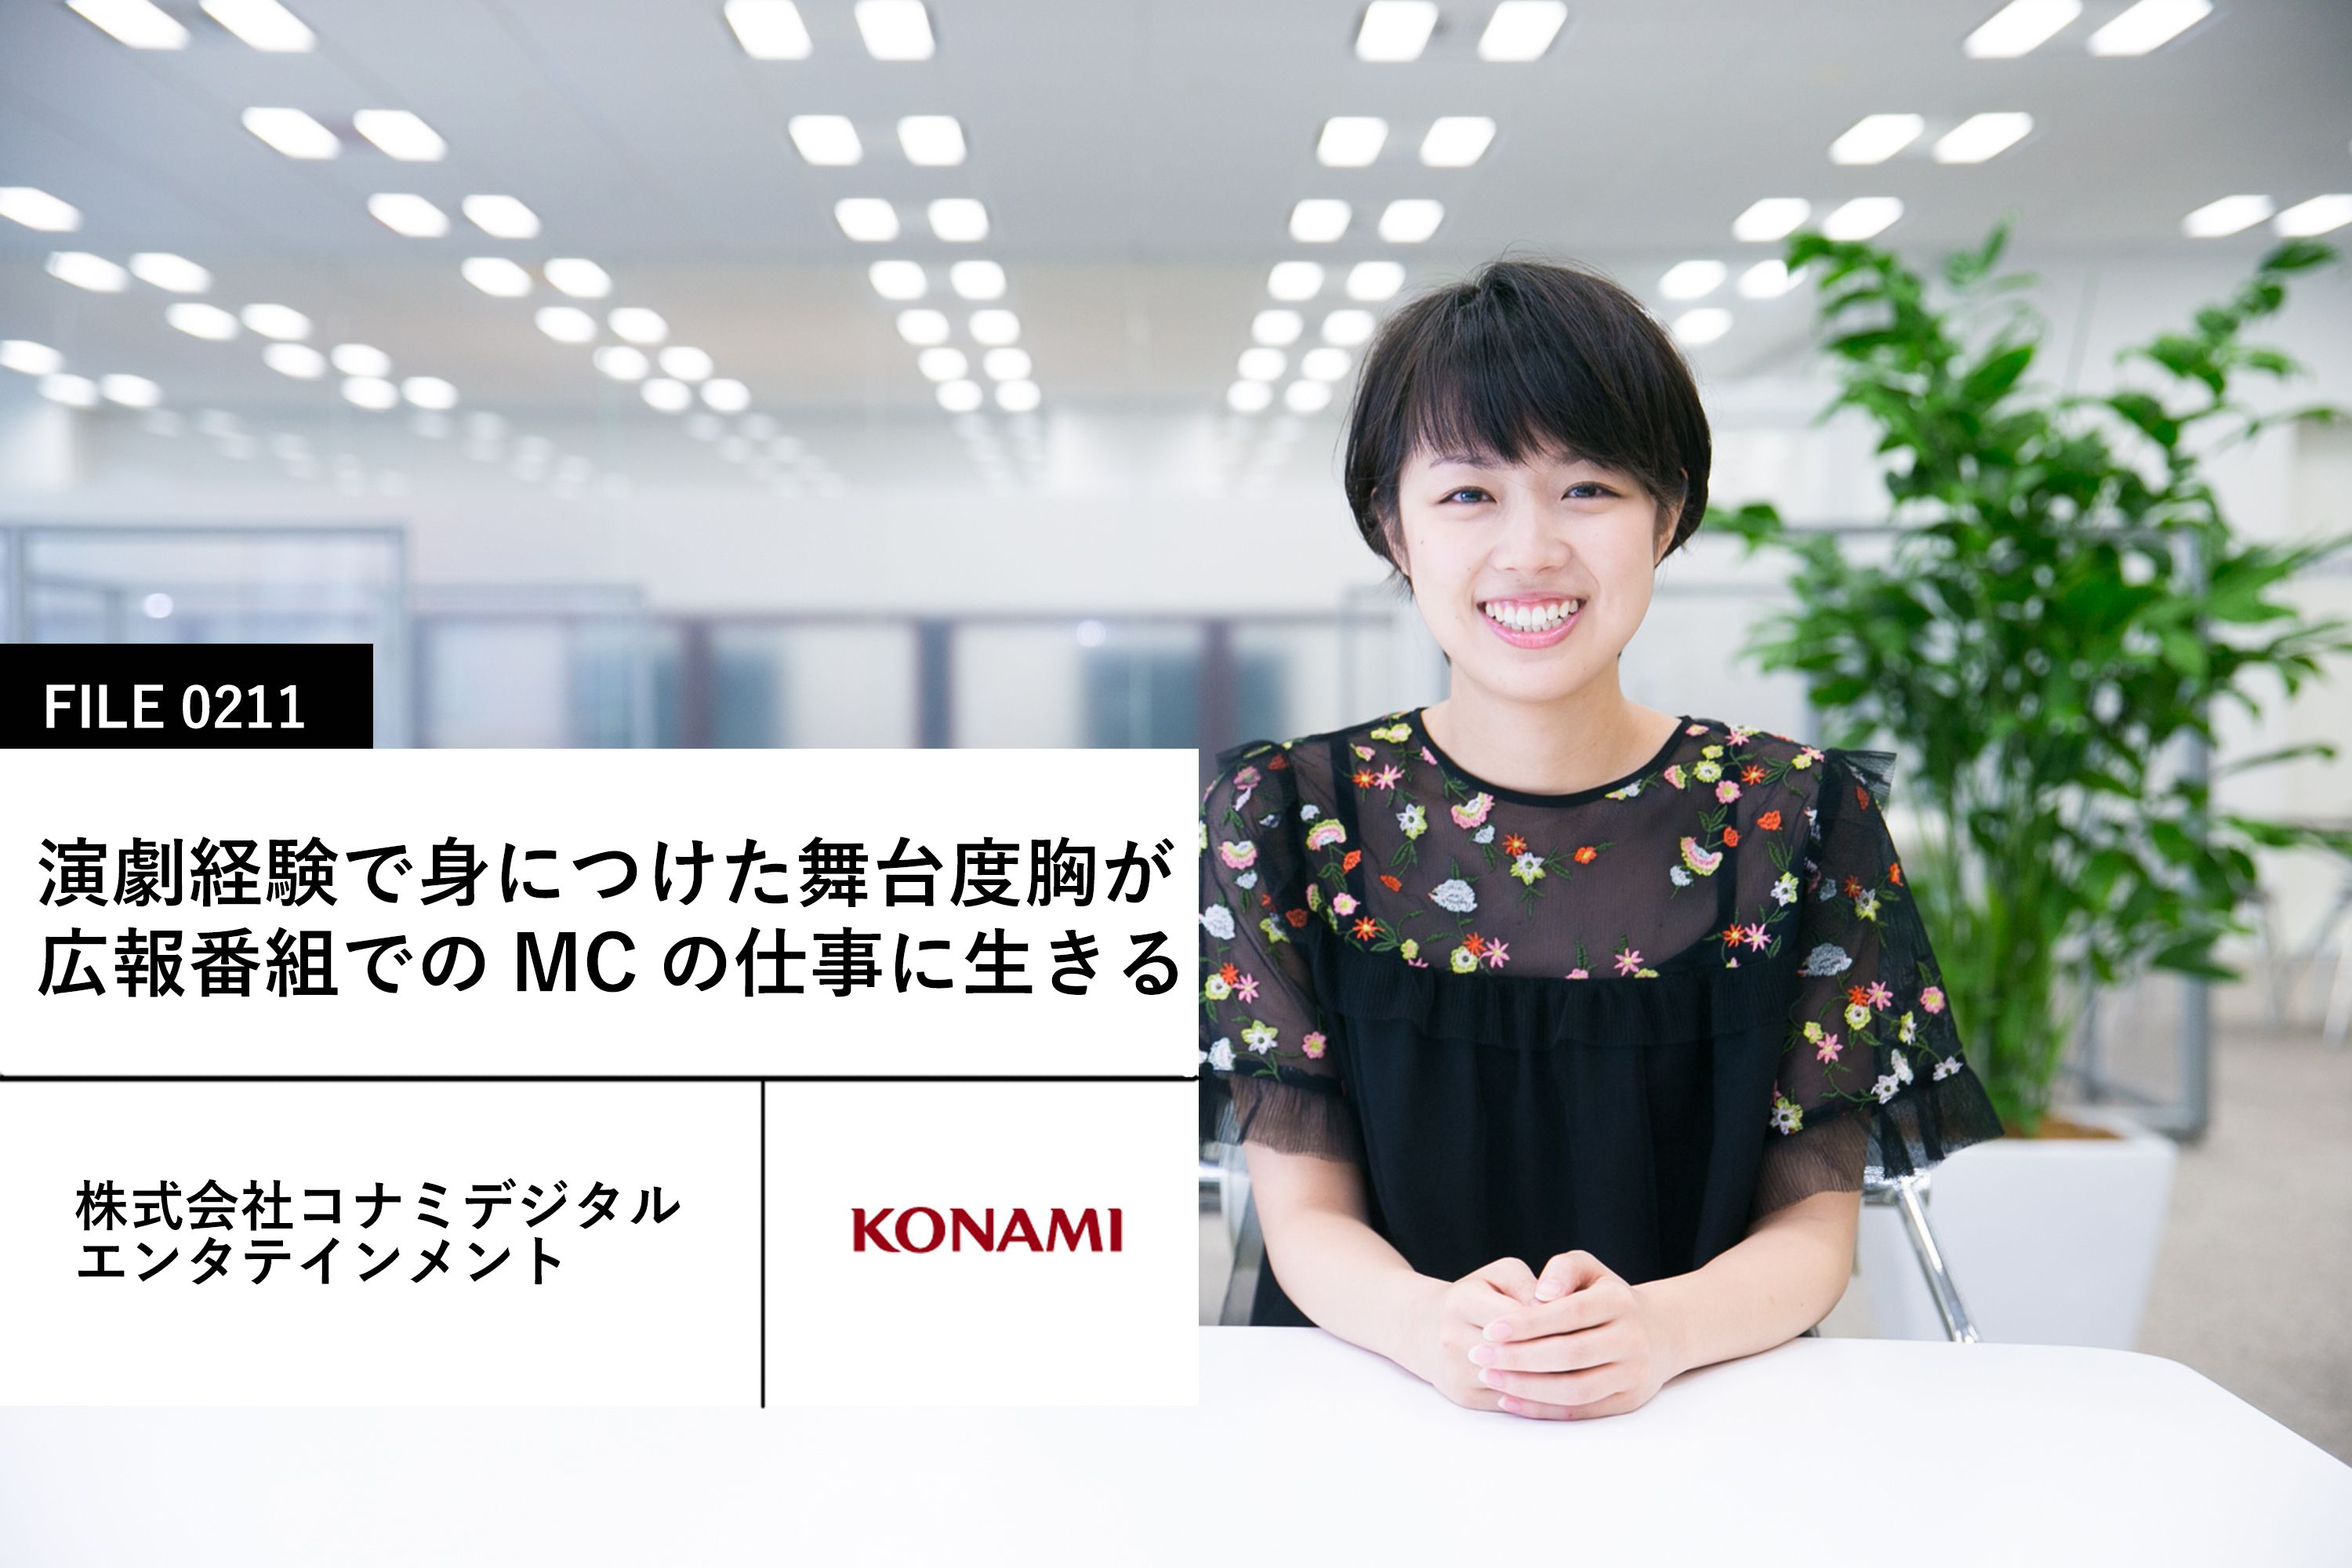 【KONAMIの先輩社員】株式会社コナミデジタルエンタテインメント 